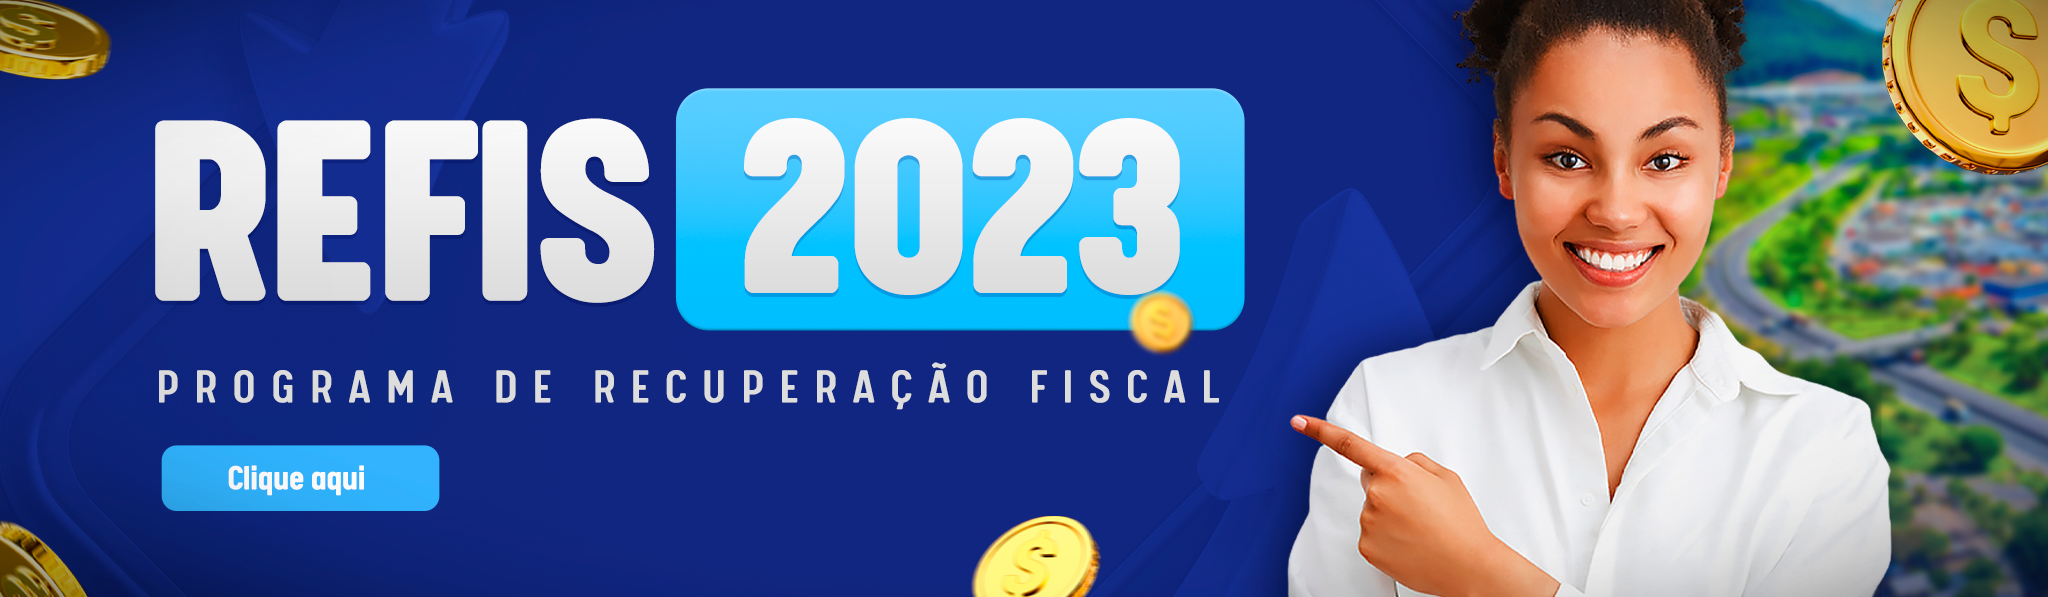 REFIS 2023: Prefeitura anuncia programa de parcelamento de dívidas para recuperação fiscal